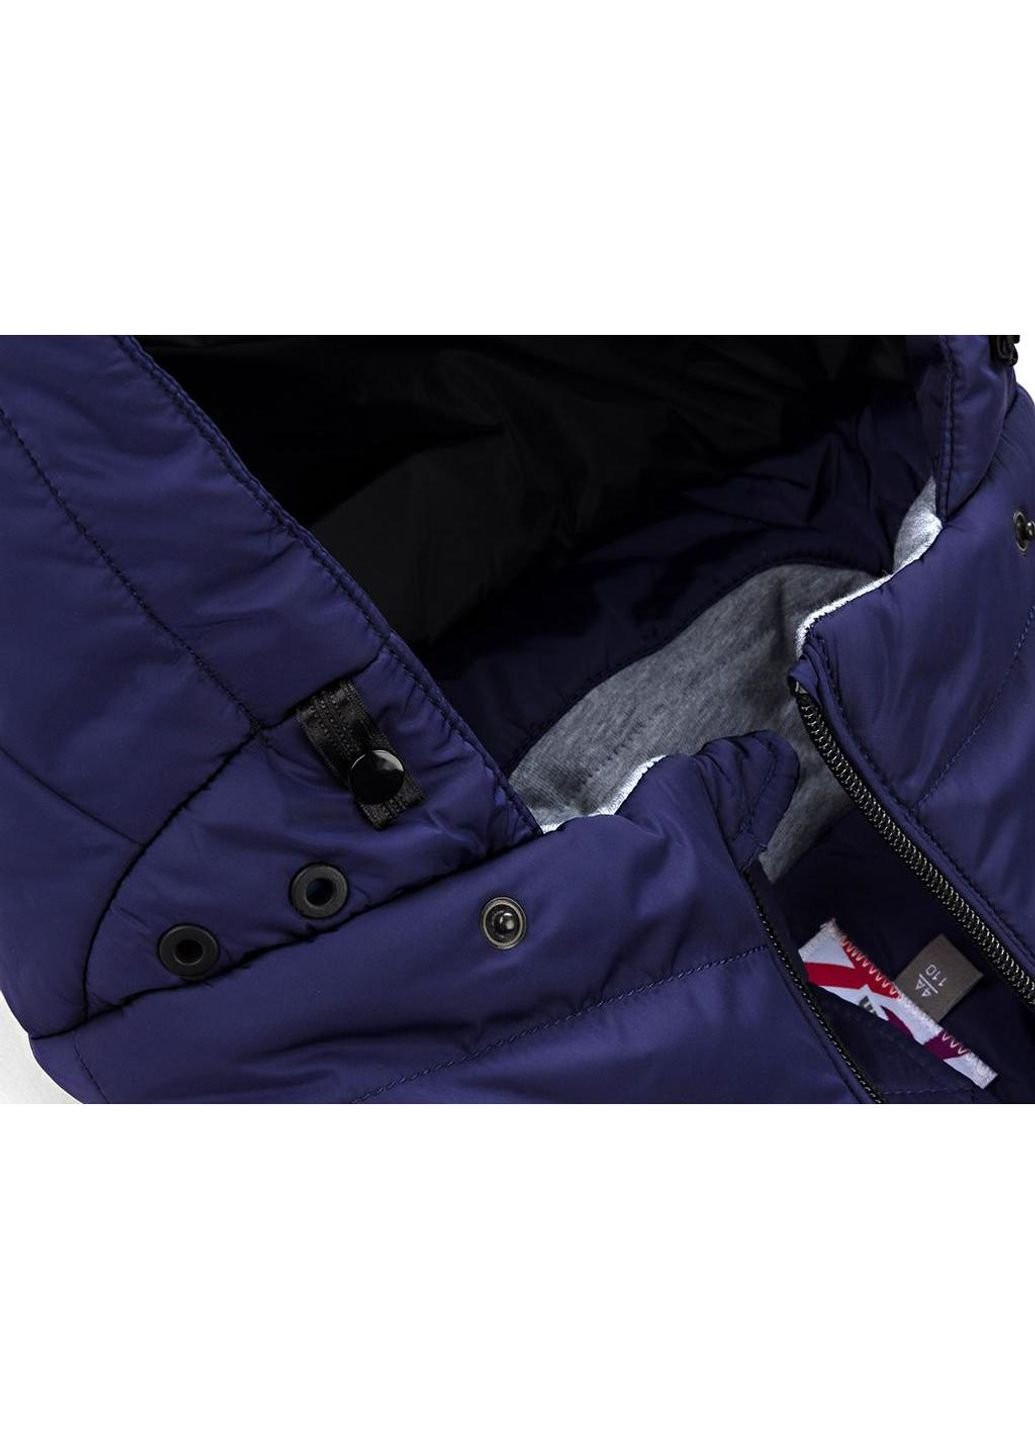 Фиолетовая демисезонная куртка с капюшоном (sicmy-g306-134b-blue) Snowimage